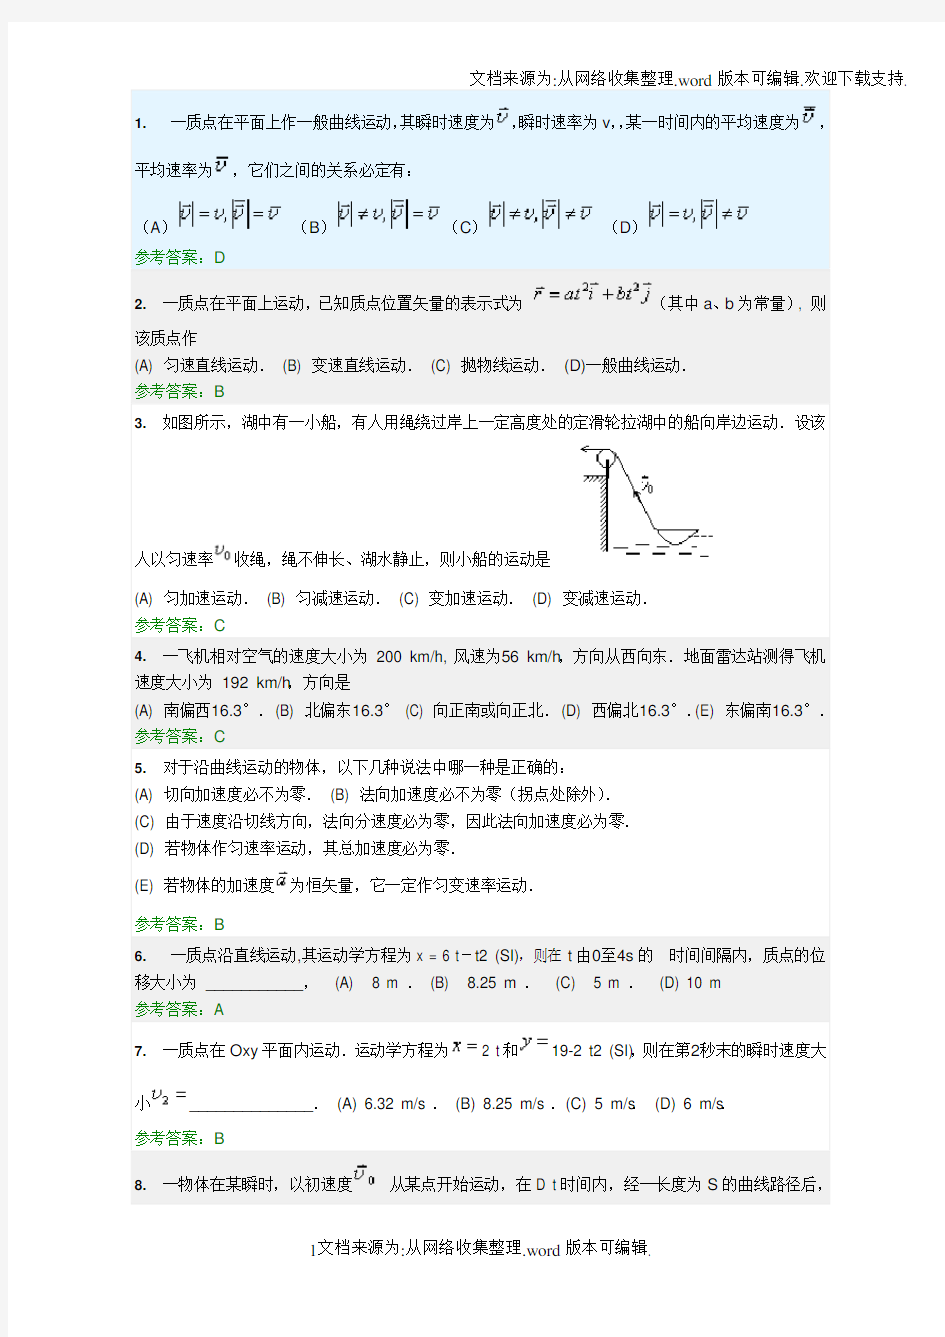 华南理工大学网络教育平台 大学物理 随堂练习